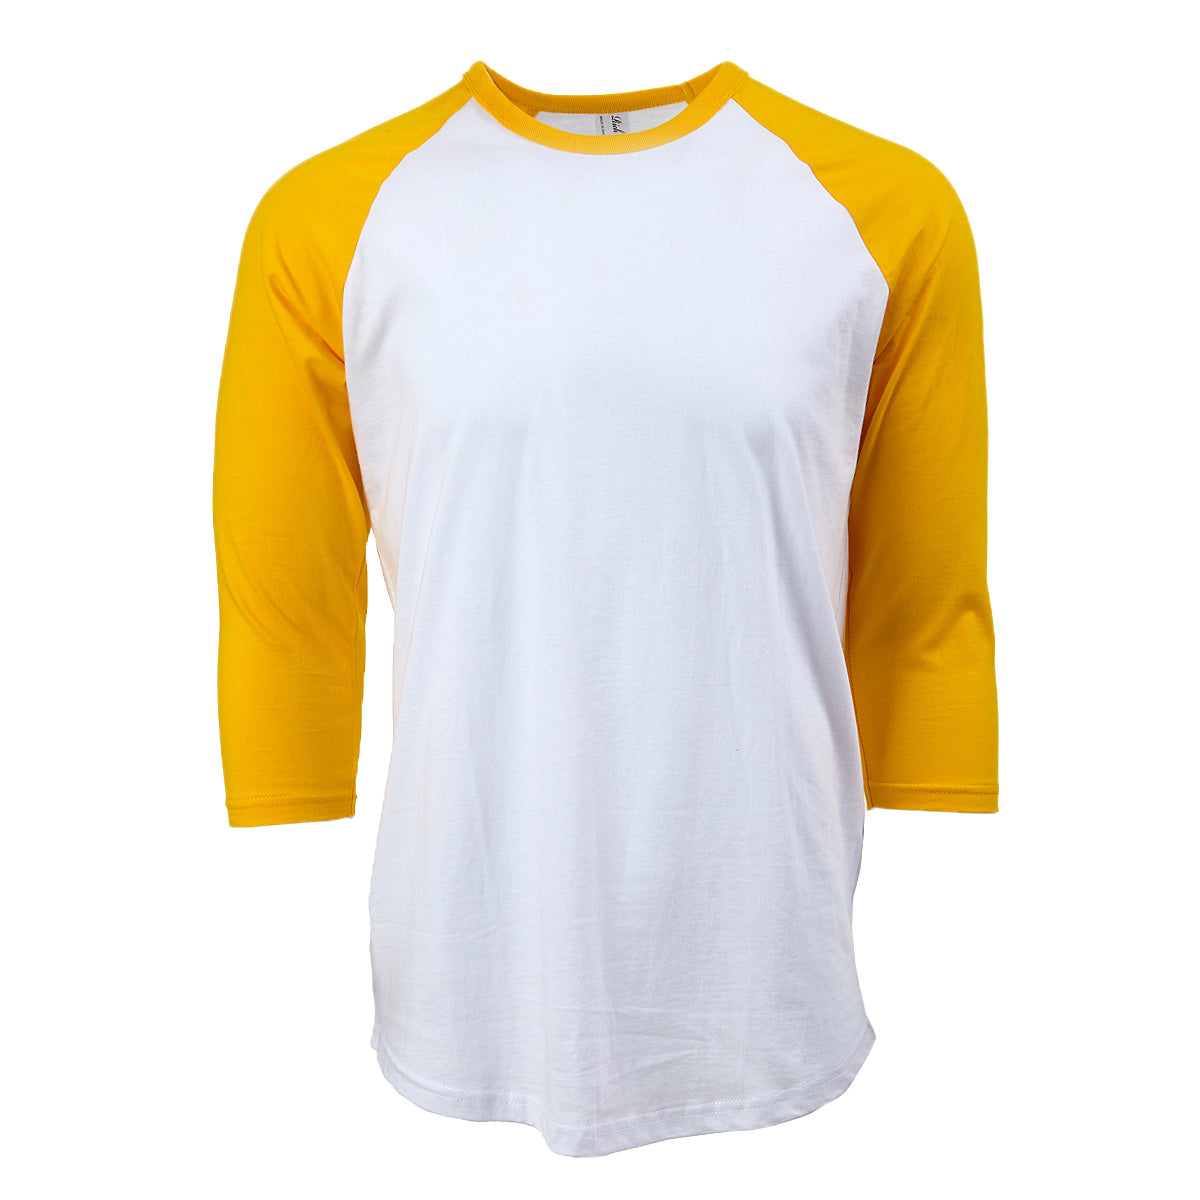 krog At Bliver værre Rich Cotton Raglan Baseball T-shirt White/Yellow